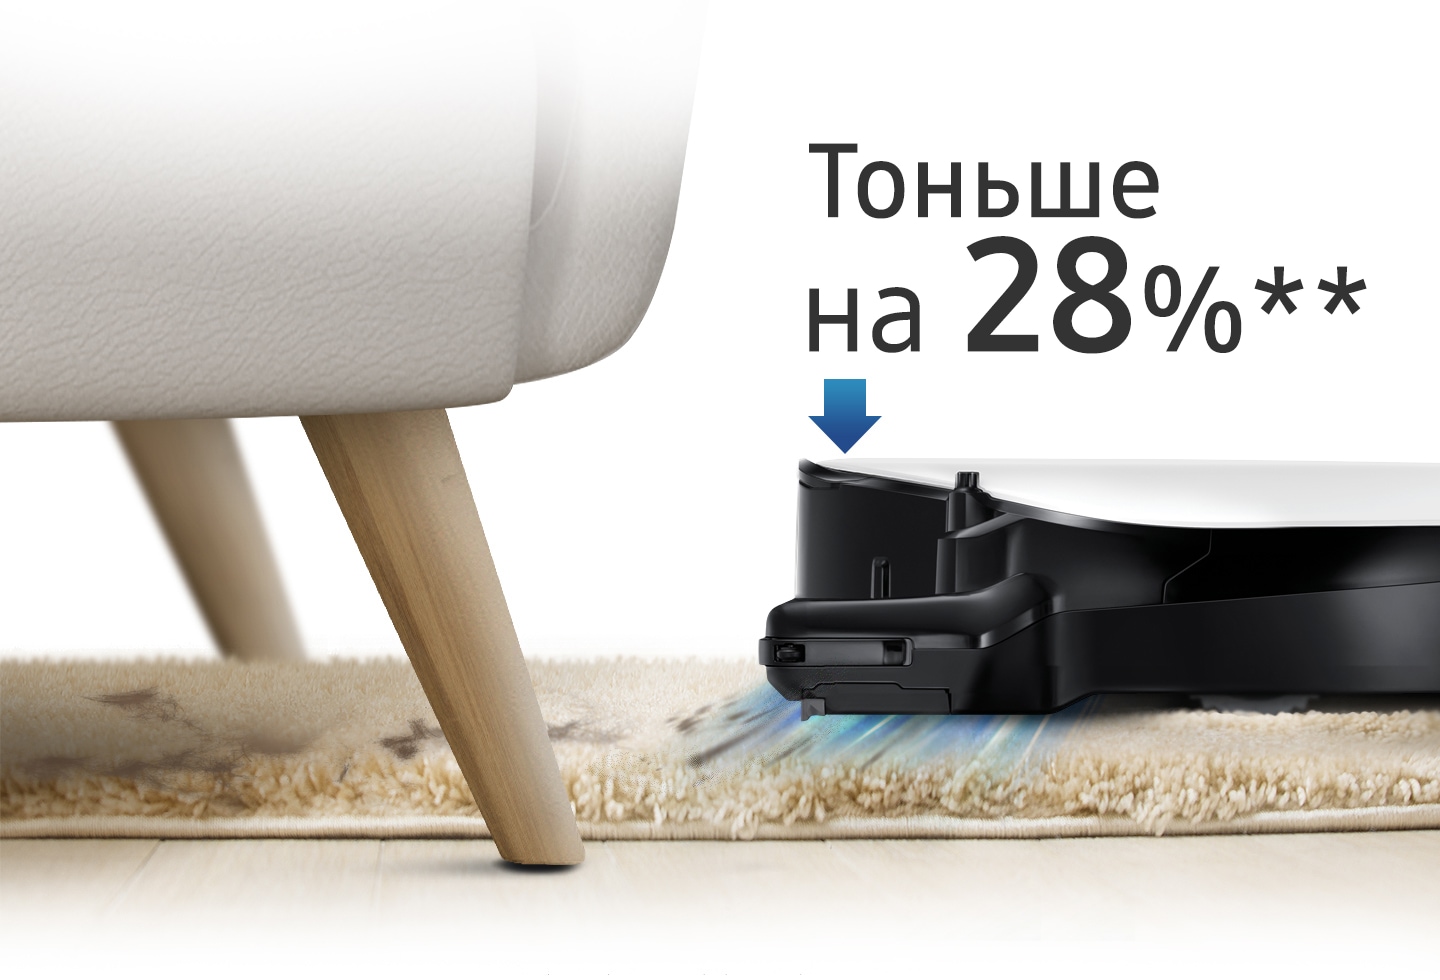 Изображение, показывающее, как робот пылесос POWERbot VR7000 пылесосит ковер и убирает под диваном, а также значок со стрелкой и текст, который гласит: «На 28 % стройнее».